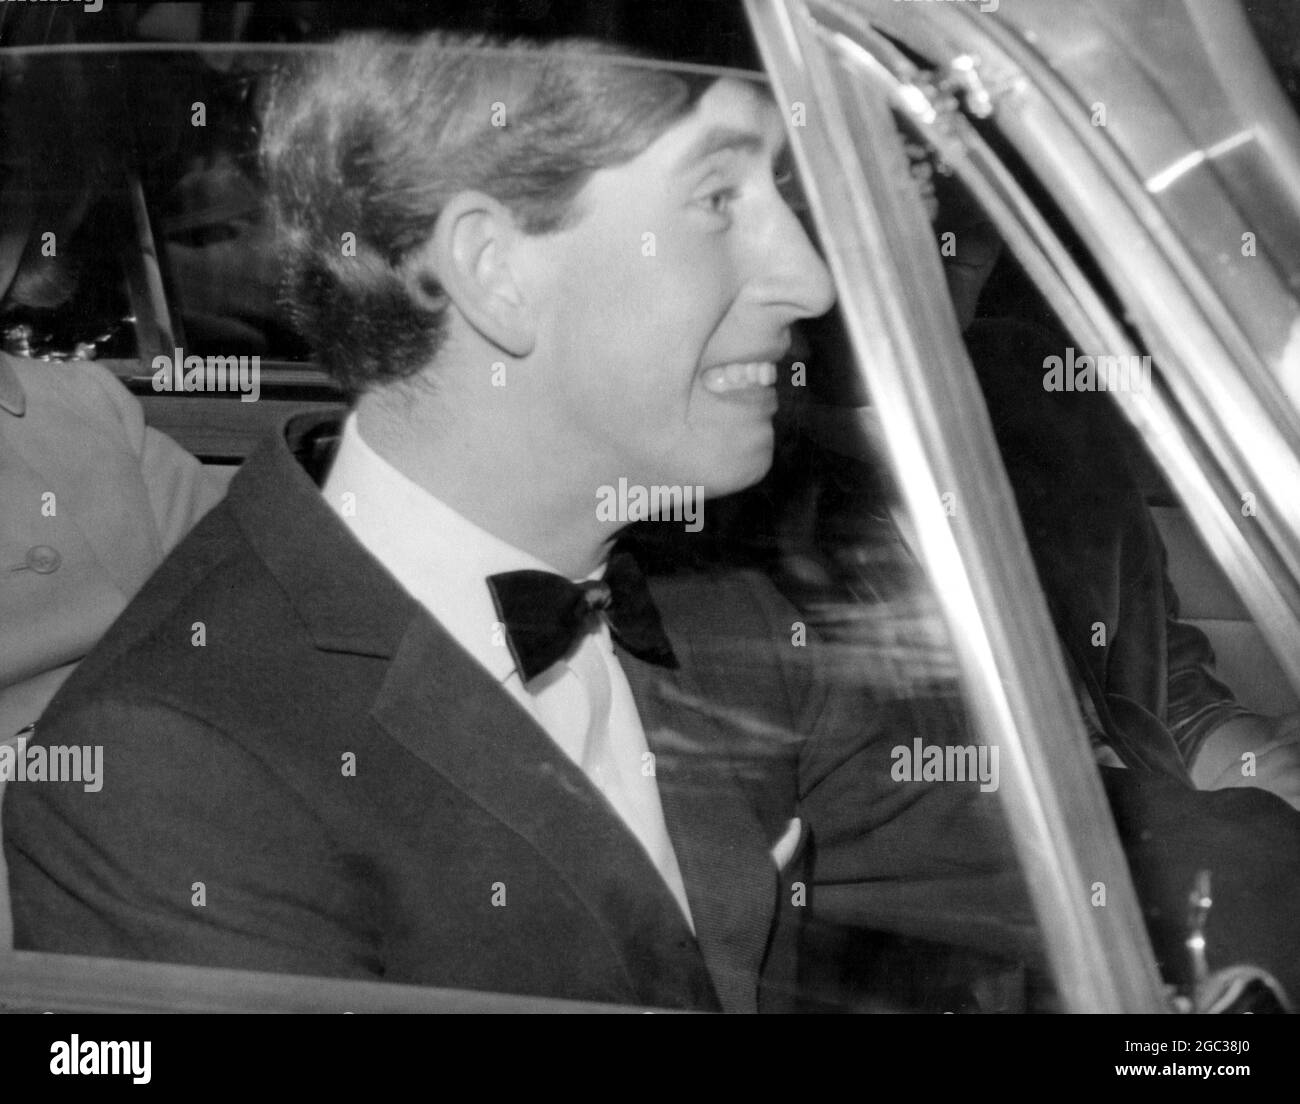 Il principe Charles, che guidava nel traffico di Londra la prima volta dopo aver superato il test di guida della scorsa settimana, ha ritratto al volante quando lascia il Vaudeville Theatre la scorsa notte. Con la principessa Margaret, Lord Snowdon e la principessa Anne, era stato per vedere gli angeli caduti di Noel Coward. 18 aprile 1967 Foto Stock